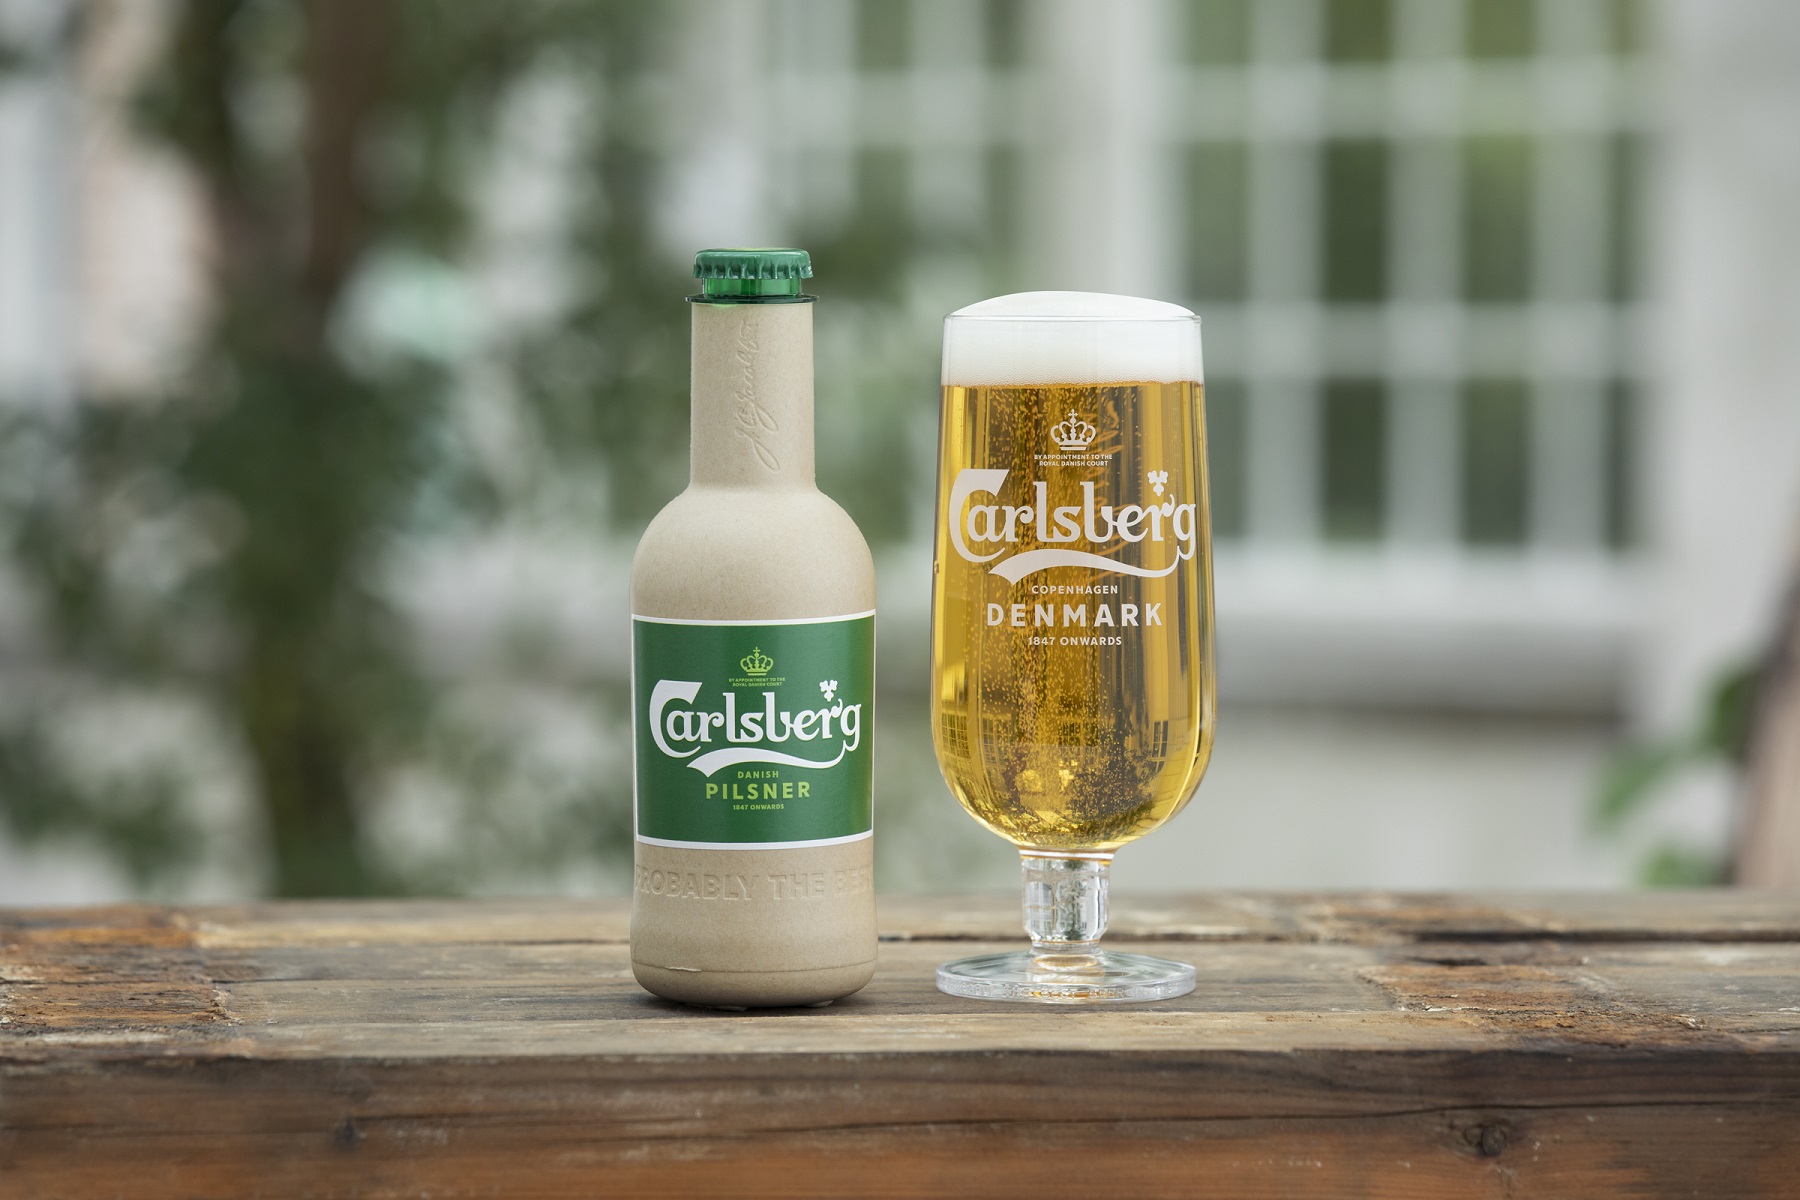 Beers in Green Bottles: Exploring Beer Packaging